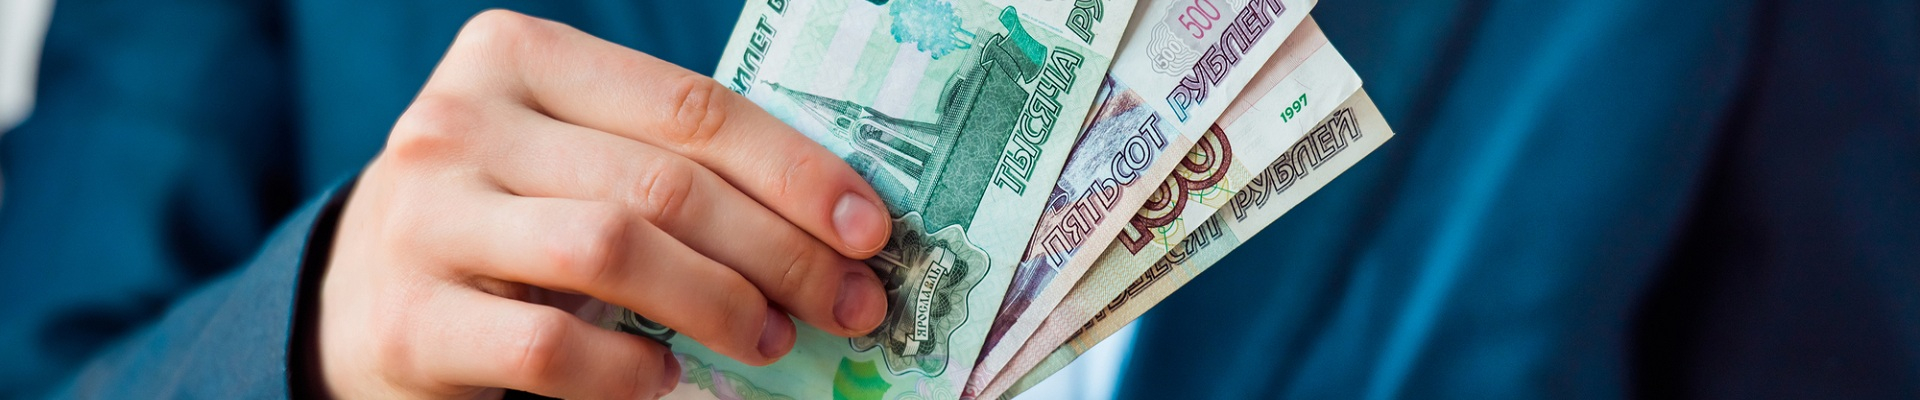 Банк России планирует изменить критерии для улучшения кредитования субъектов малого и среднего бизнеса